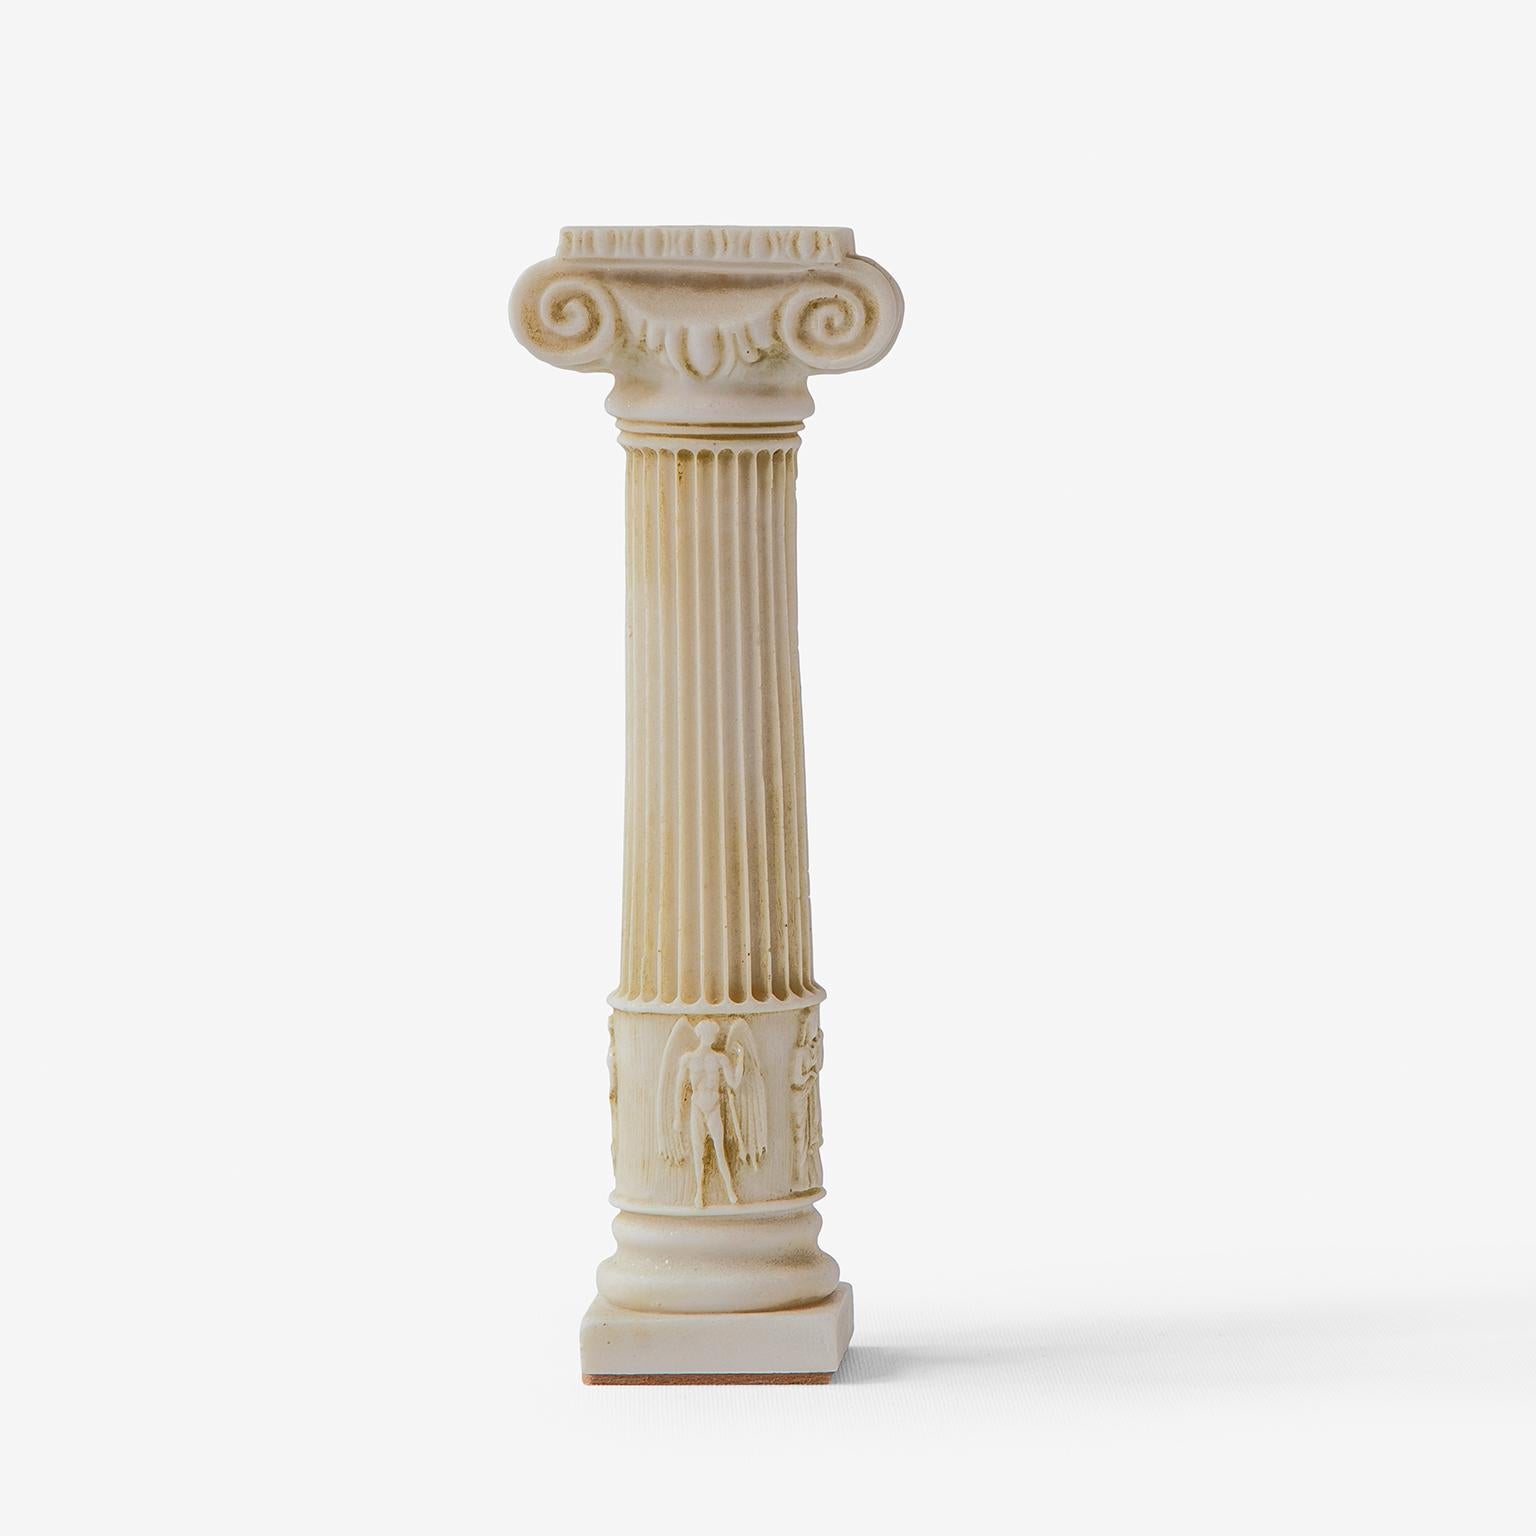 Gewicht: 700 gr

Dieser Kerzenständer ist ein dekoratives Element, das der schlanken, langen und eleganten Form der ionischen Säulen ähnelt, die an der westlichen und südlichen Küste Anatoliens zu finden sind. Er besteht aus gepresstem